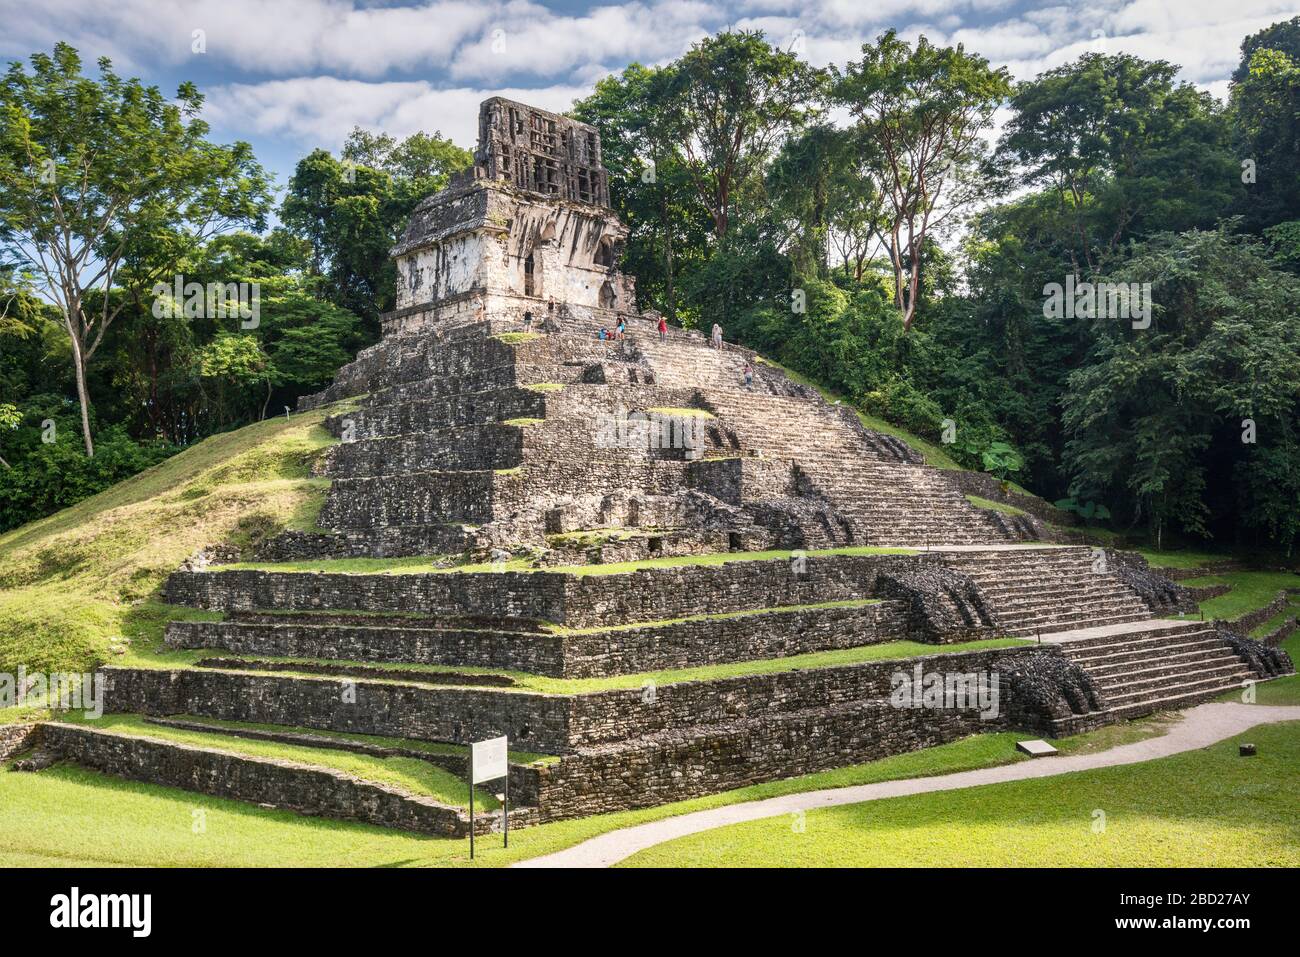 Templo de la Cruz, roof comb on top, Grupo de la Cruz, partially excavated in tropical rainforest, Palenque archaeological site, Chiapas, Mexico Stock Photo